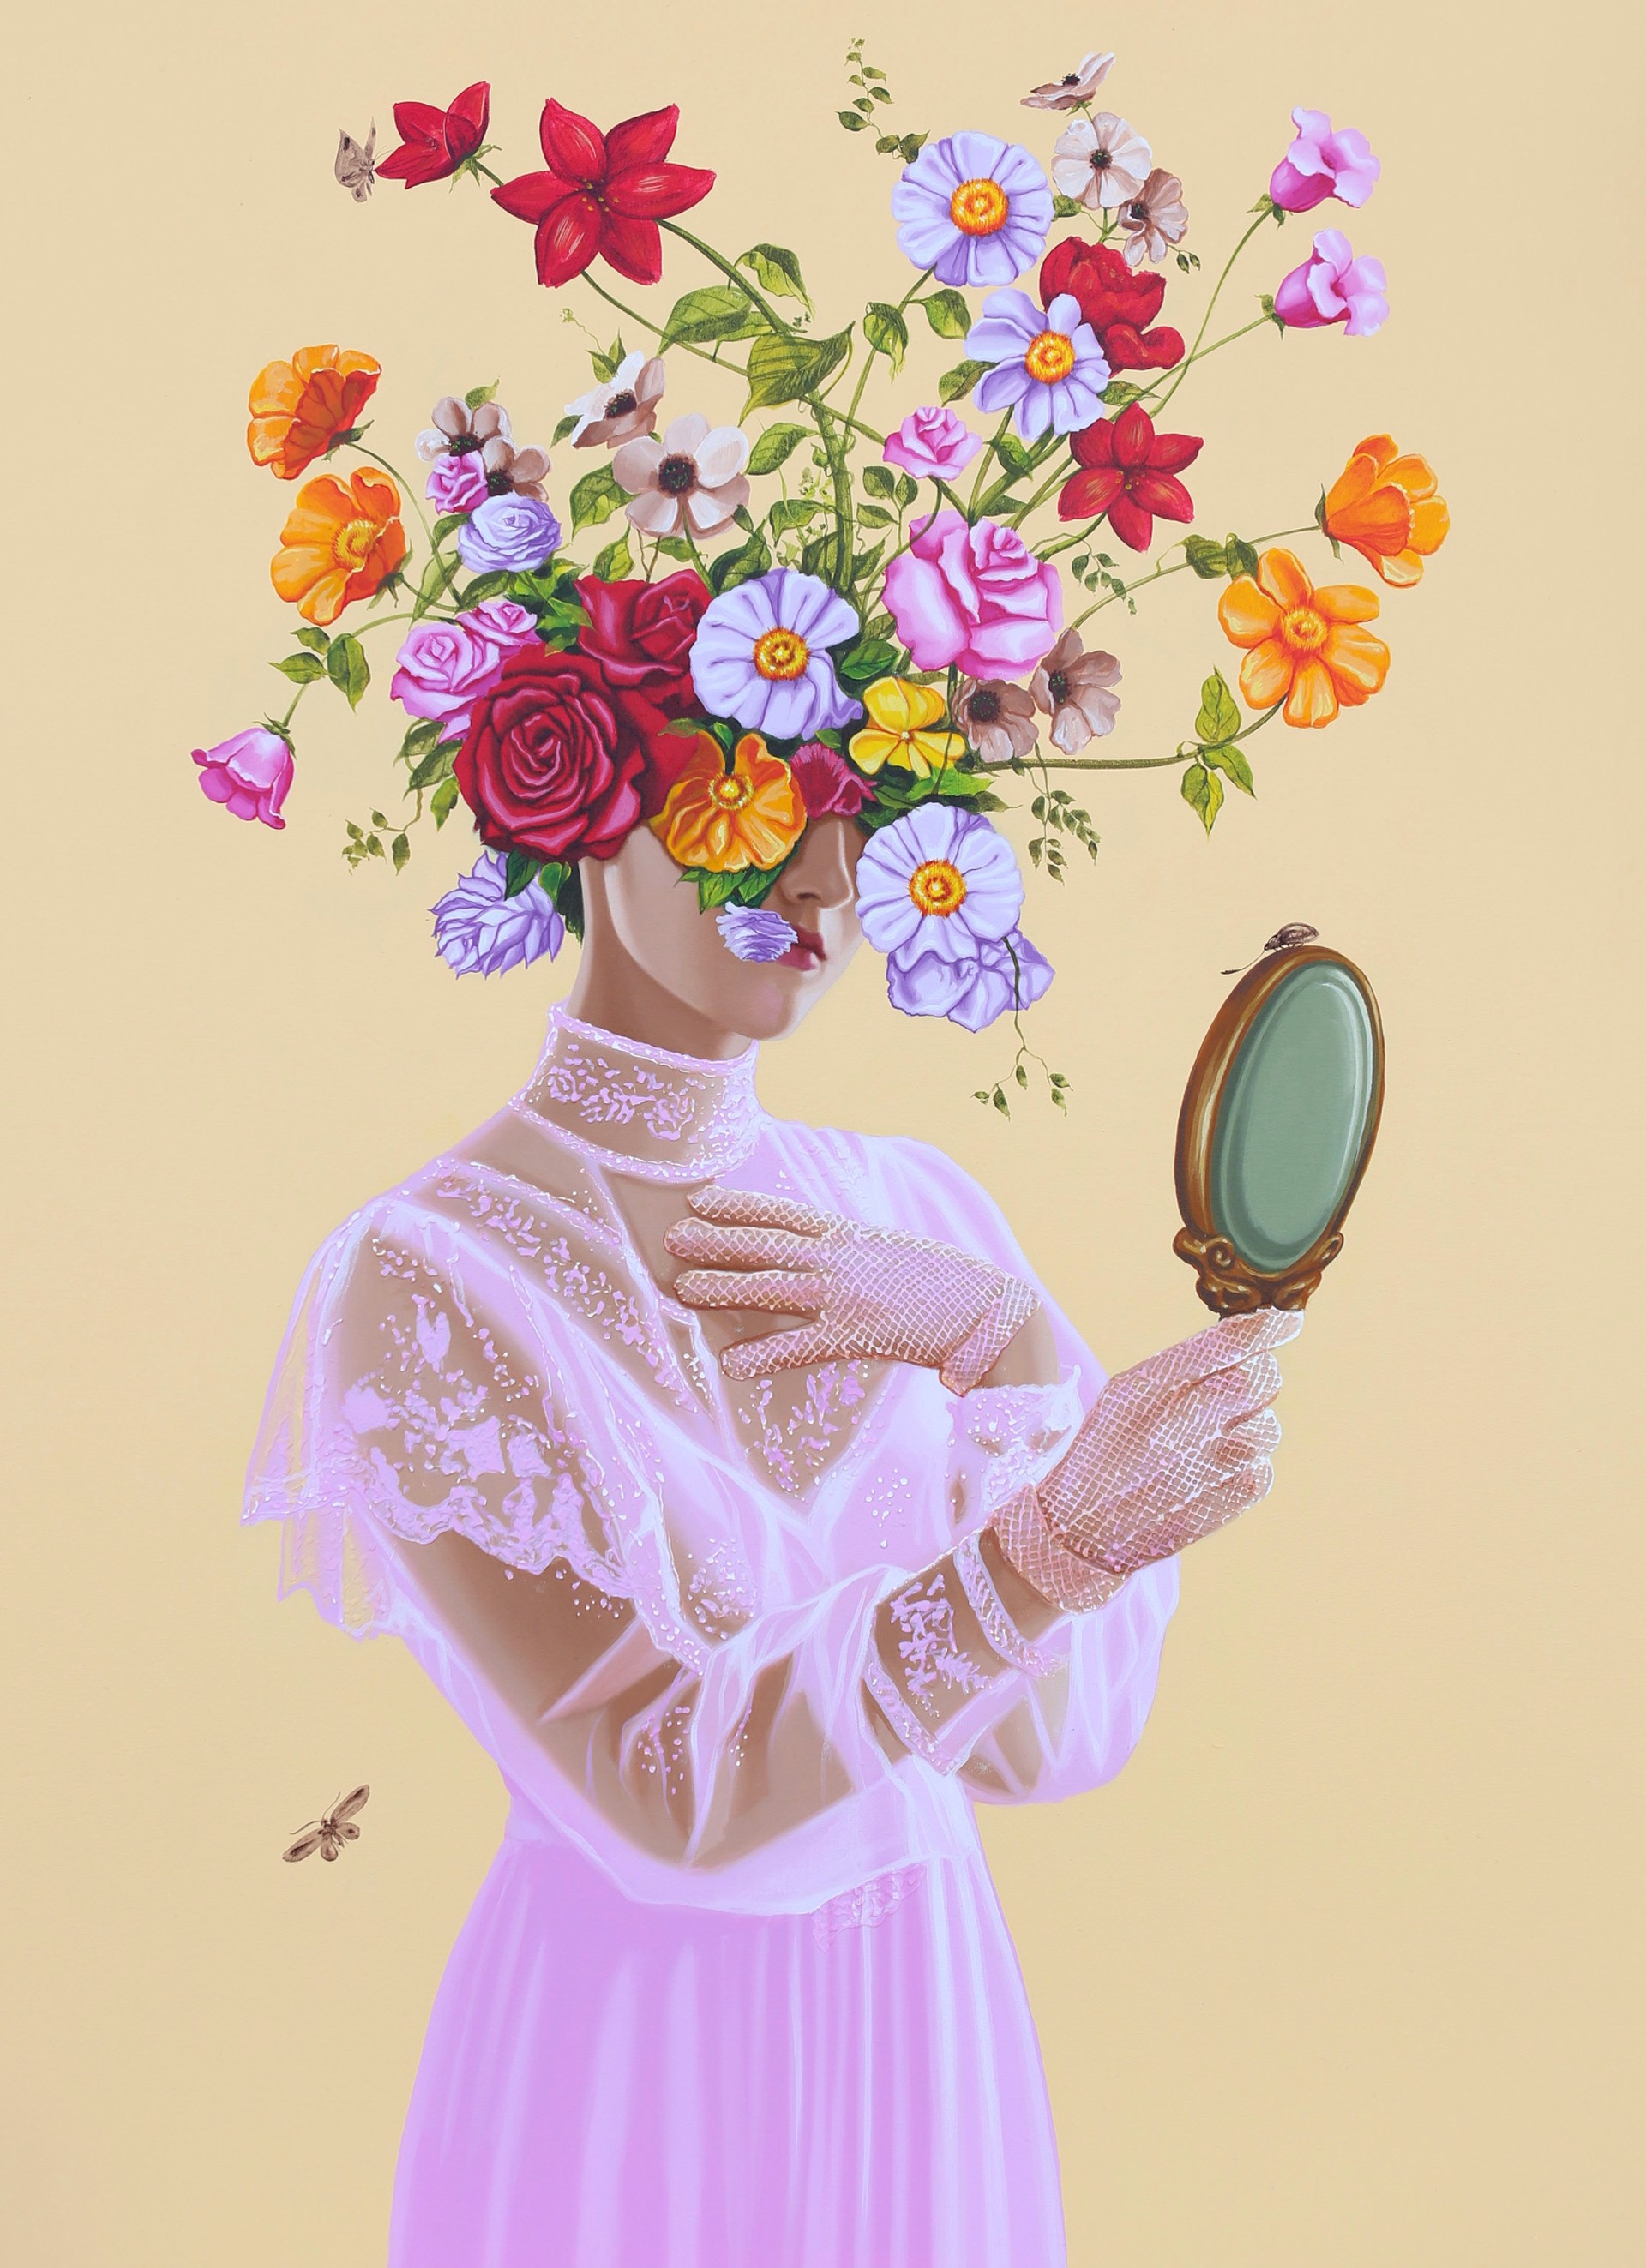 The Girl in the Mirror by Carlos Gamez de Francisco